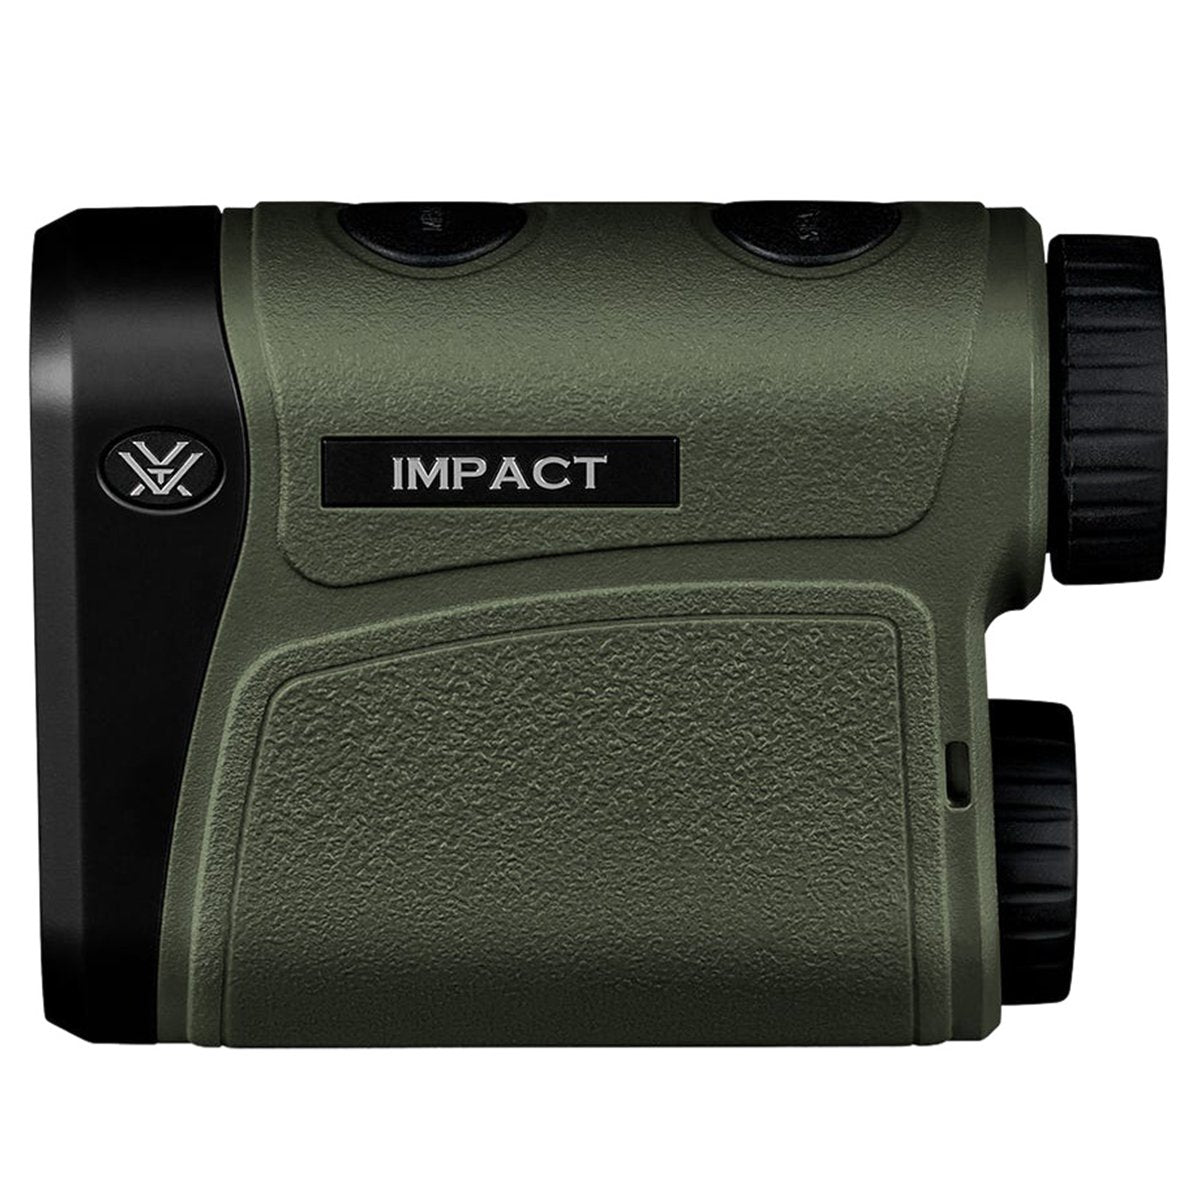 Vortex Impact 1000 Rangefinder by Vortex Optics | Optics - goHUNT Shop